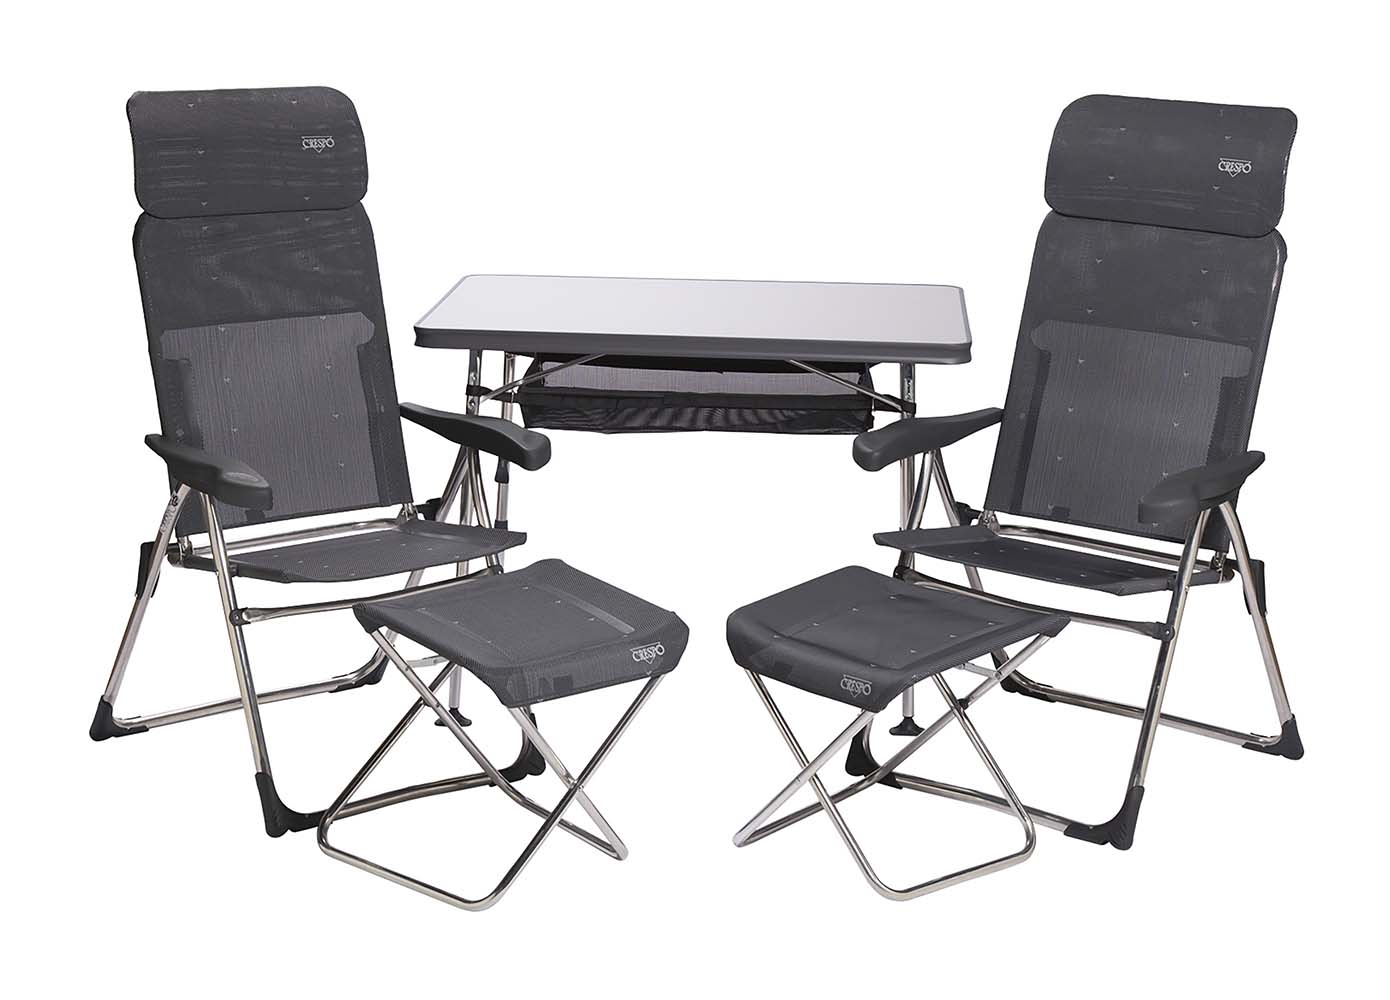 1104966 Een set bestaande uit 2 AL-213 Classic Compact stoelen met bijbehorende voetenbanken, een tafel AL-246 met opbergnet en opberghoes. Zeer compacte en ideale set voor 2 personen. De set is zeer compact mee te nemen. Inclusief opberghoes.In totaliteit is de set compact opvouwbaar en maar 17 cm dik.